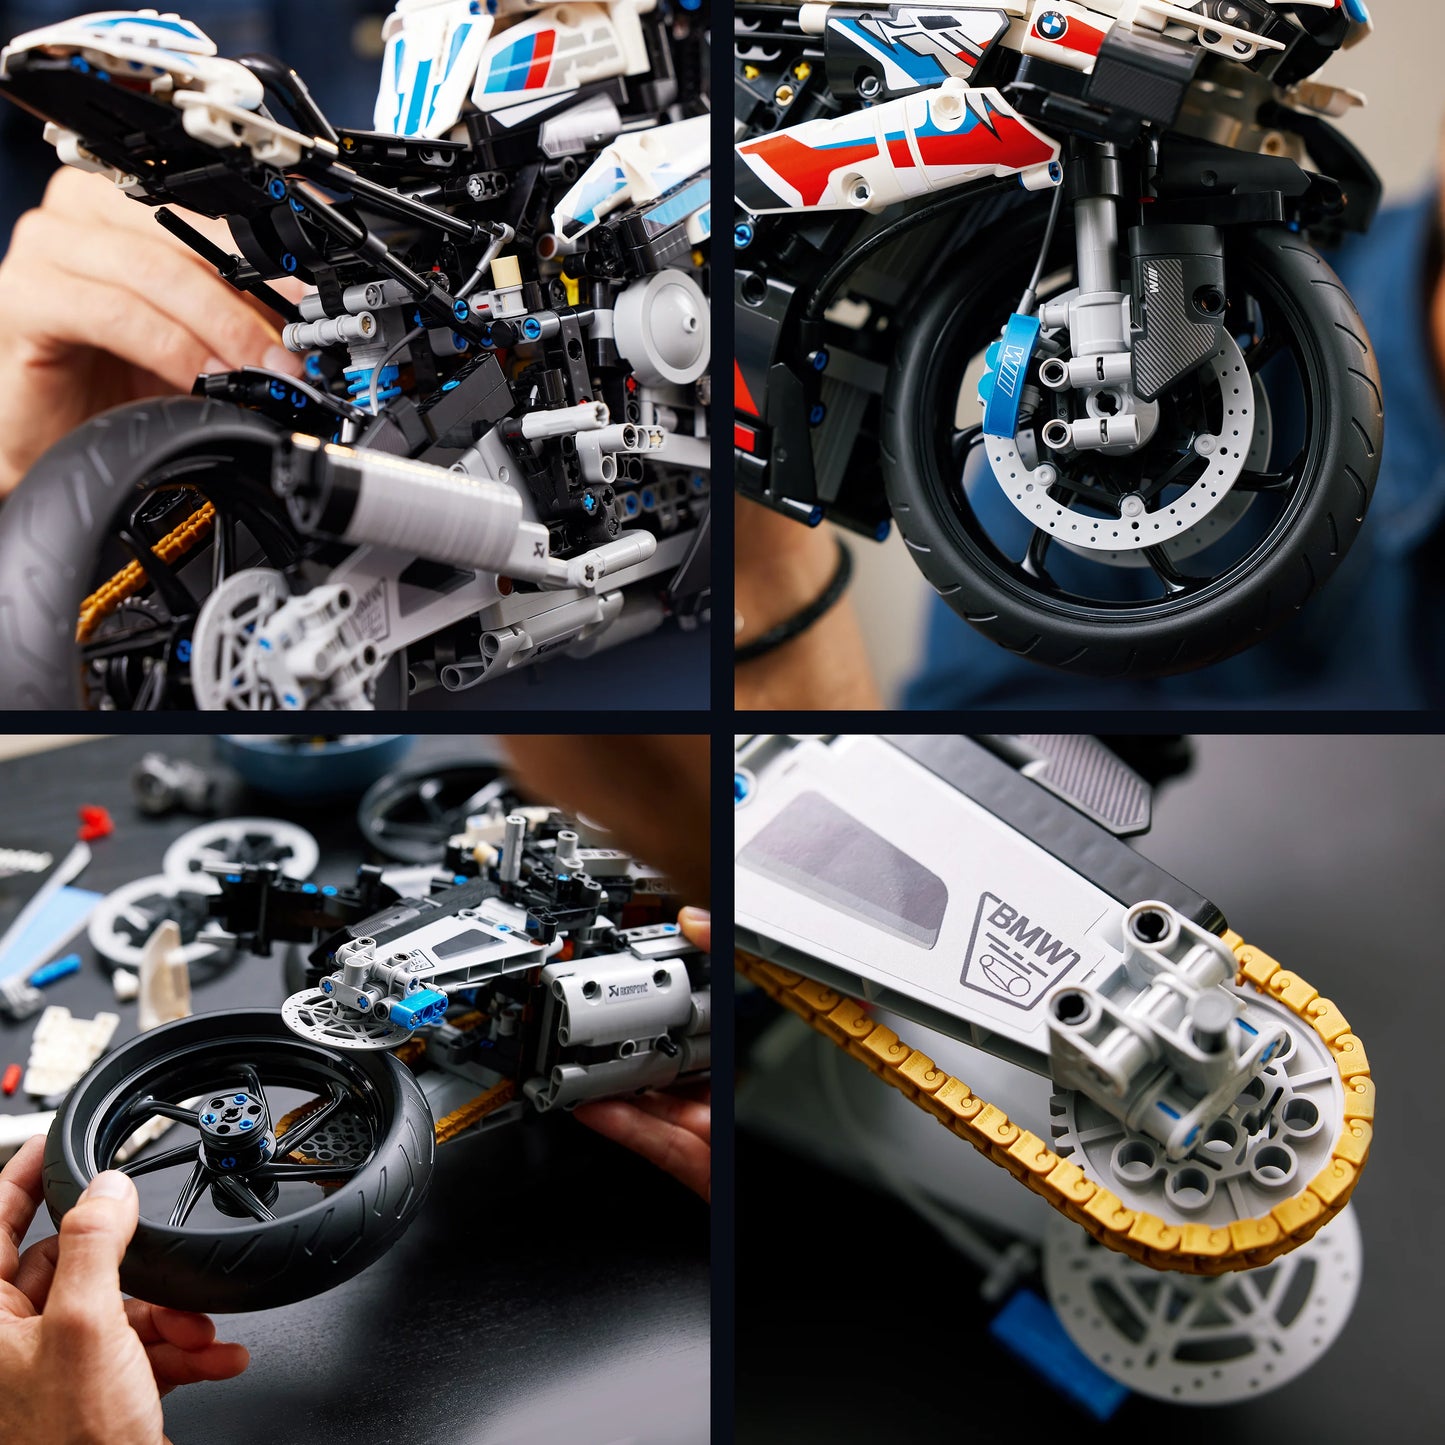 BMW M 1000 RR - LEGO Technic